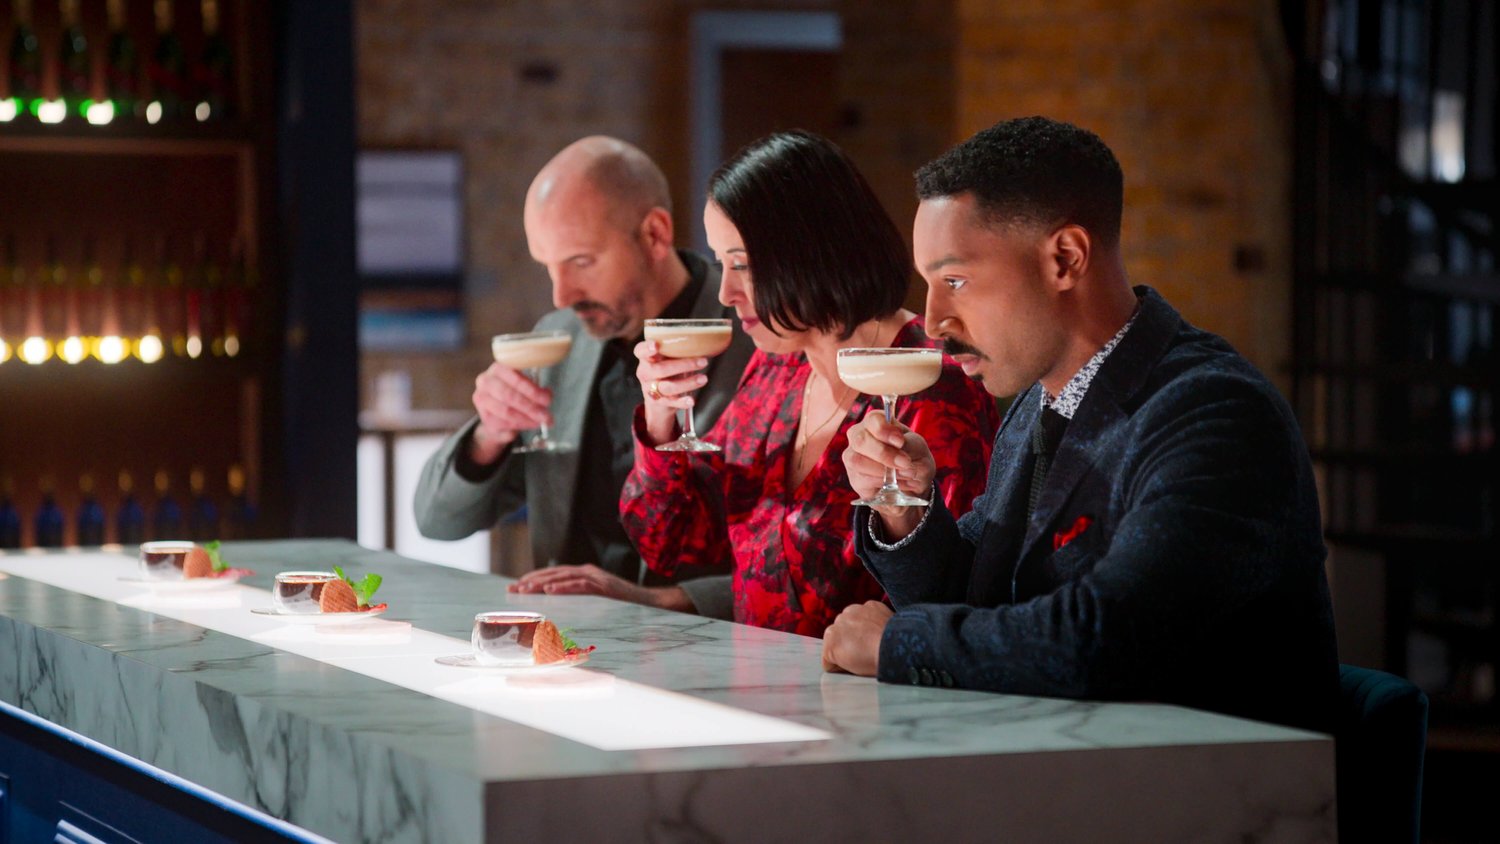 Drink Masters judges sampling a cocktail